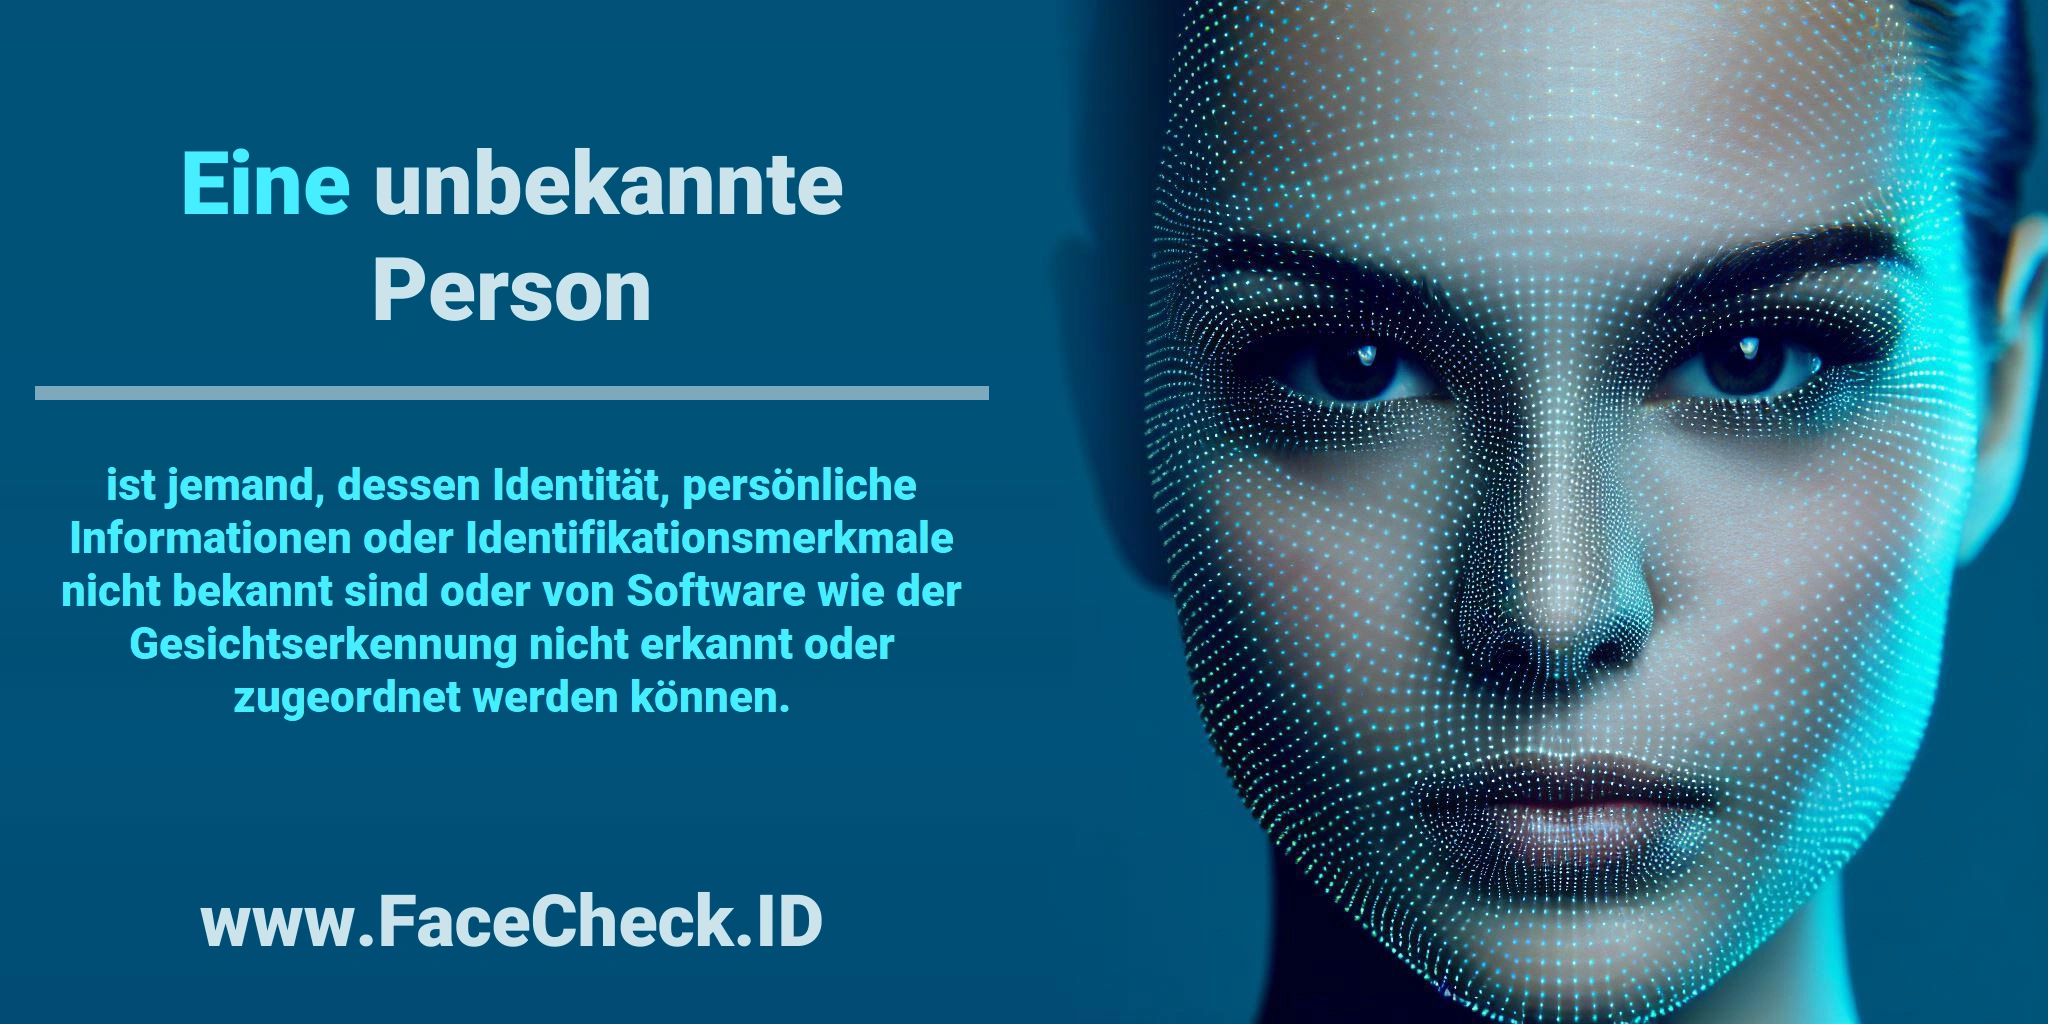 Eine <b>unbekannte Person</b> ist jemand, dessen Identität, persönliche Informationen oder Identifikationsmerkmale nicht bekannt sind oder von Software wie der Gesichtserkennung nicht erkannt oder zugeordnet werden können.